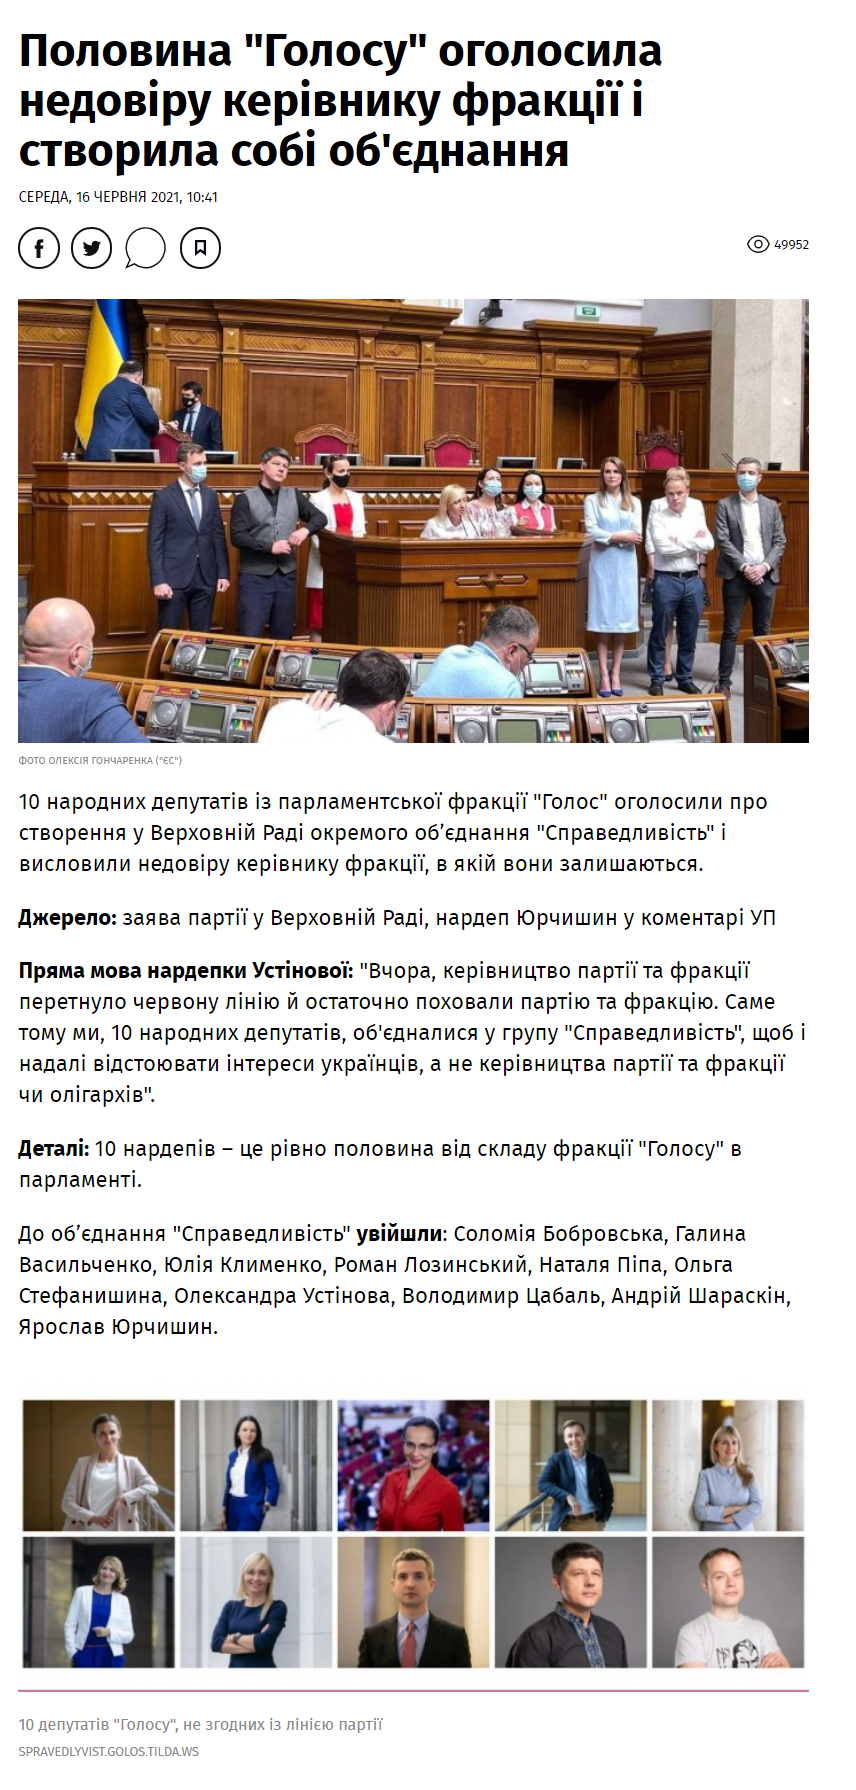 https://www.pravda.com.ua/news/2021/06/16/7297400/